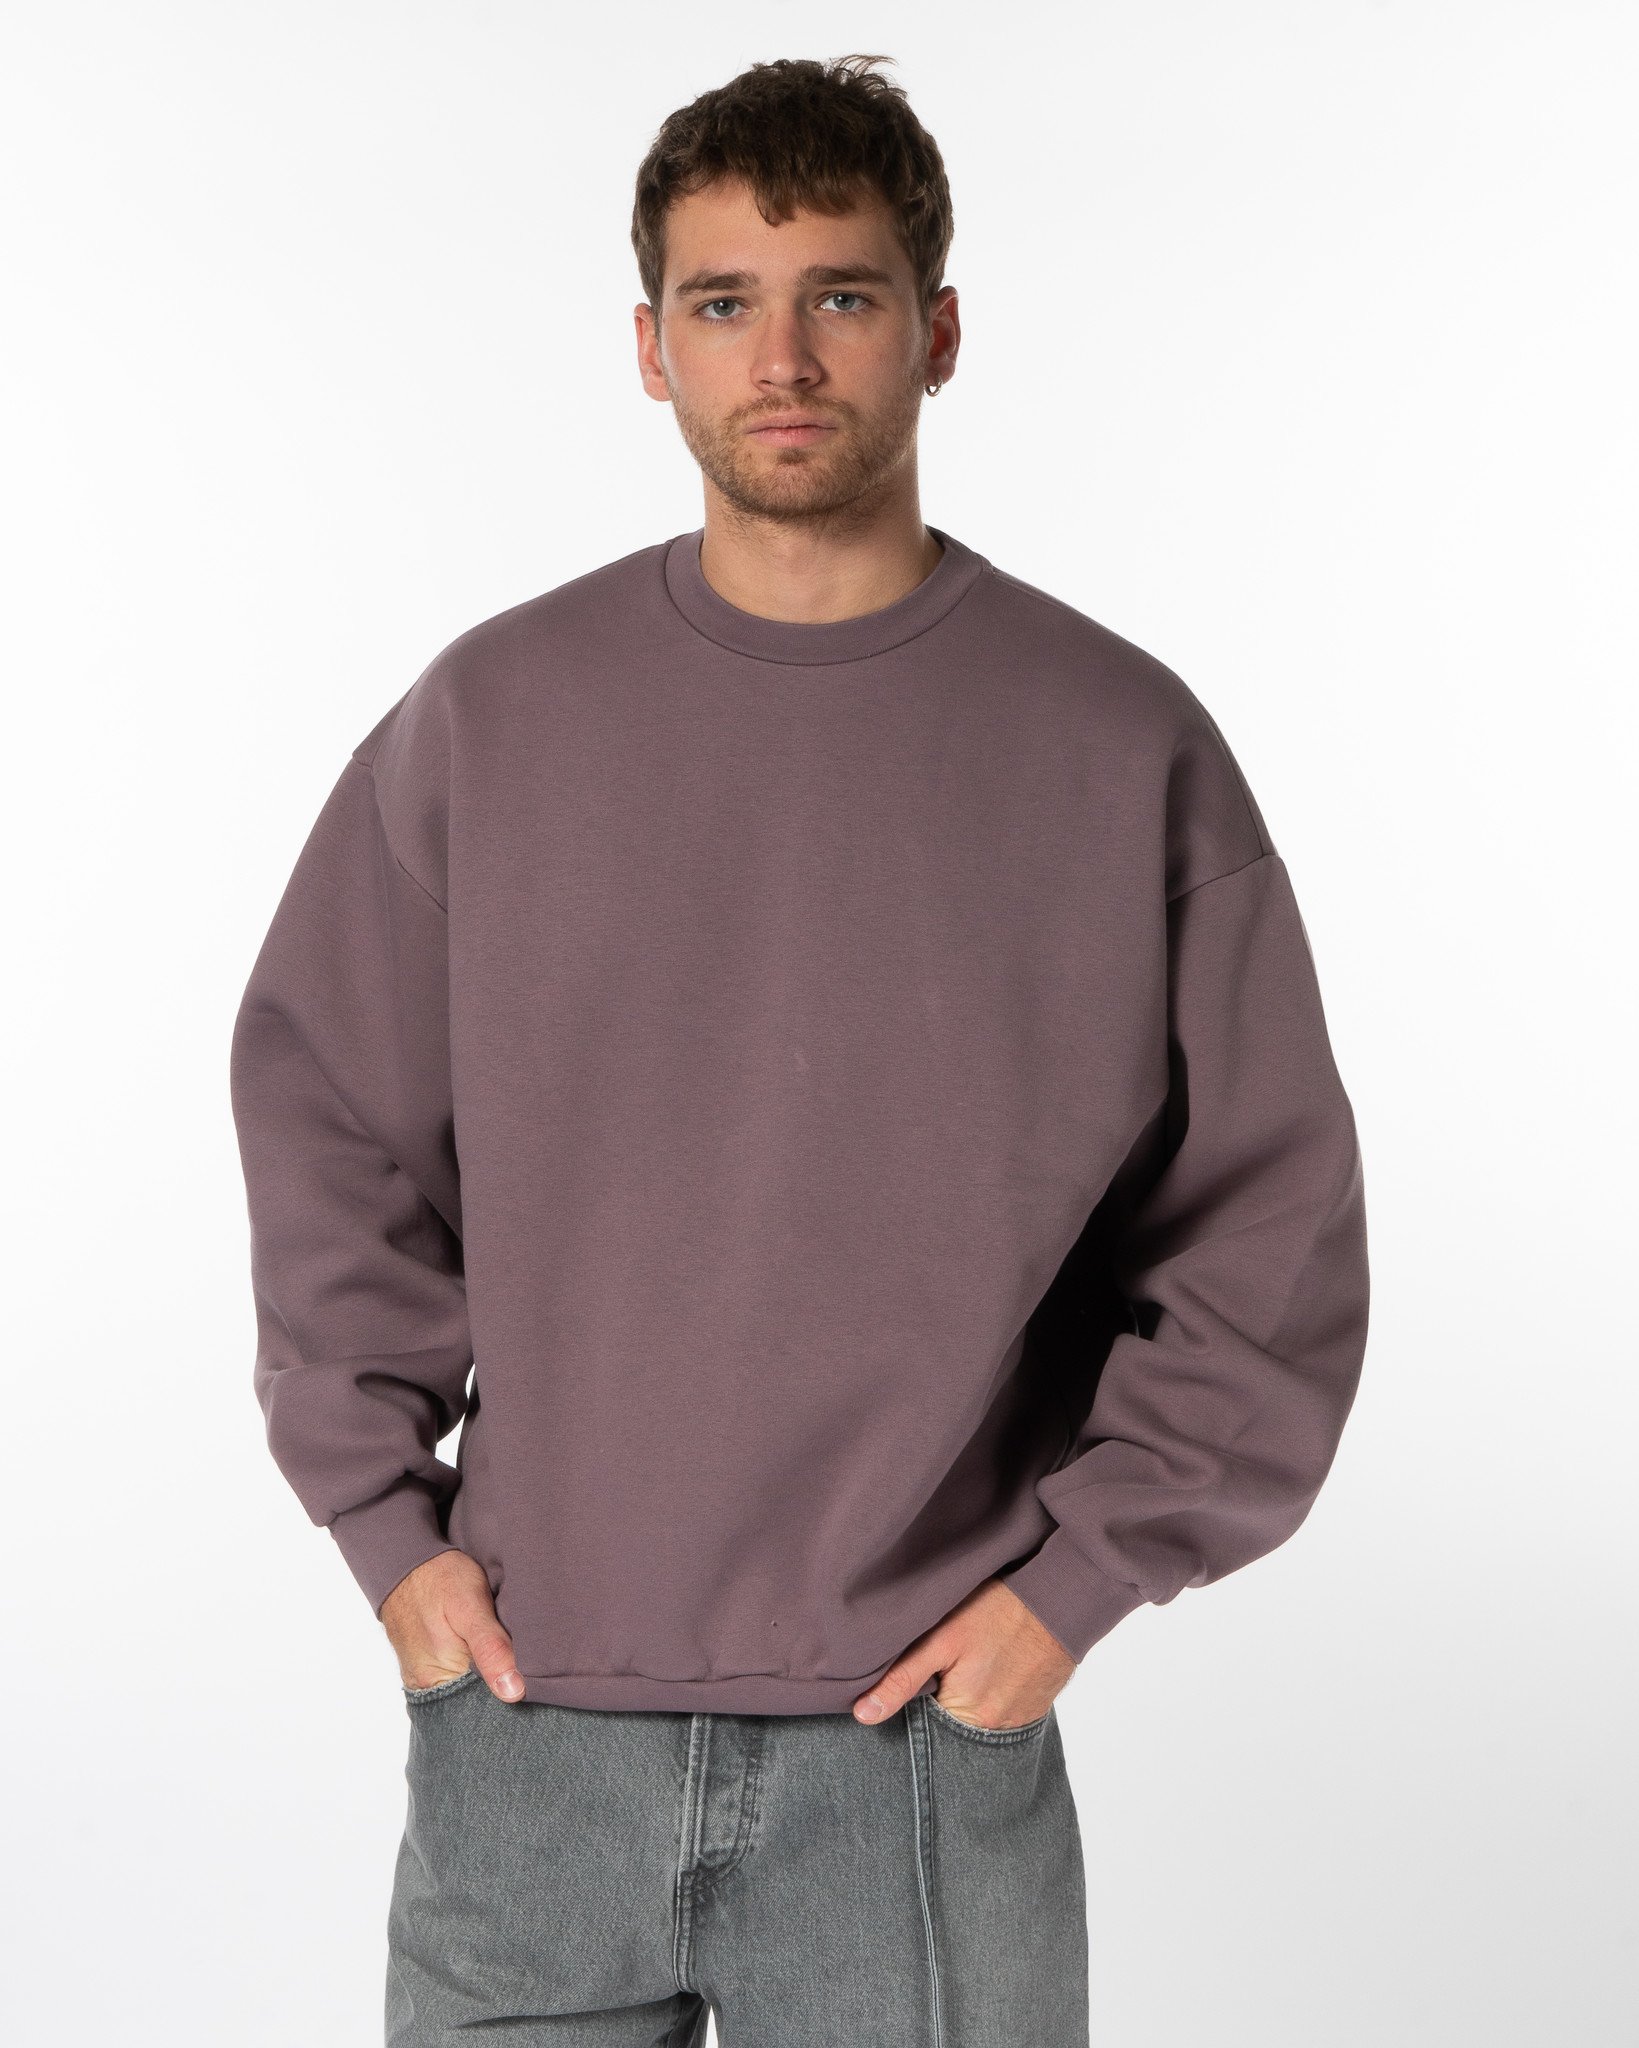 Men's Sweatshirts, Designer & Crew Neck Sweatshirts